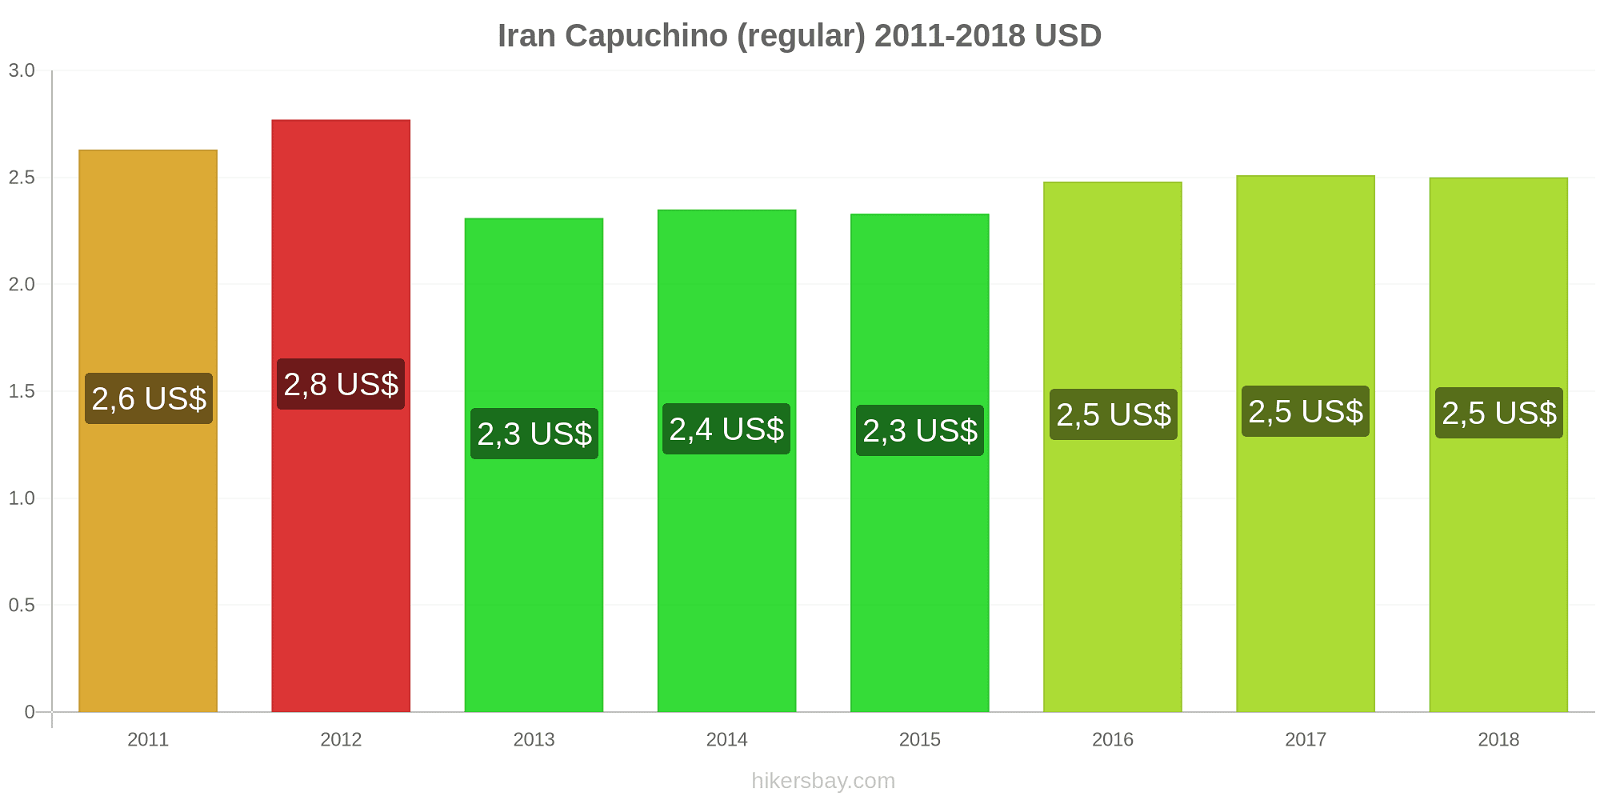 Iran cambios de precios Cappuccino hikersbay.com